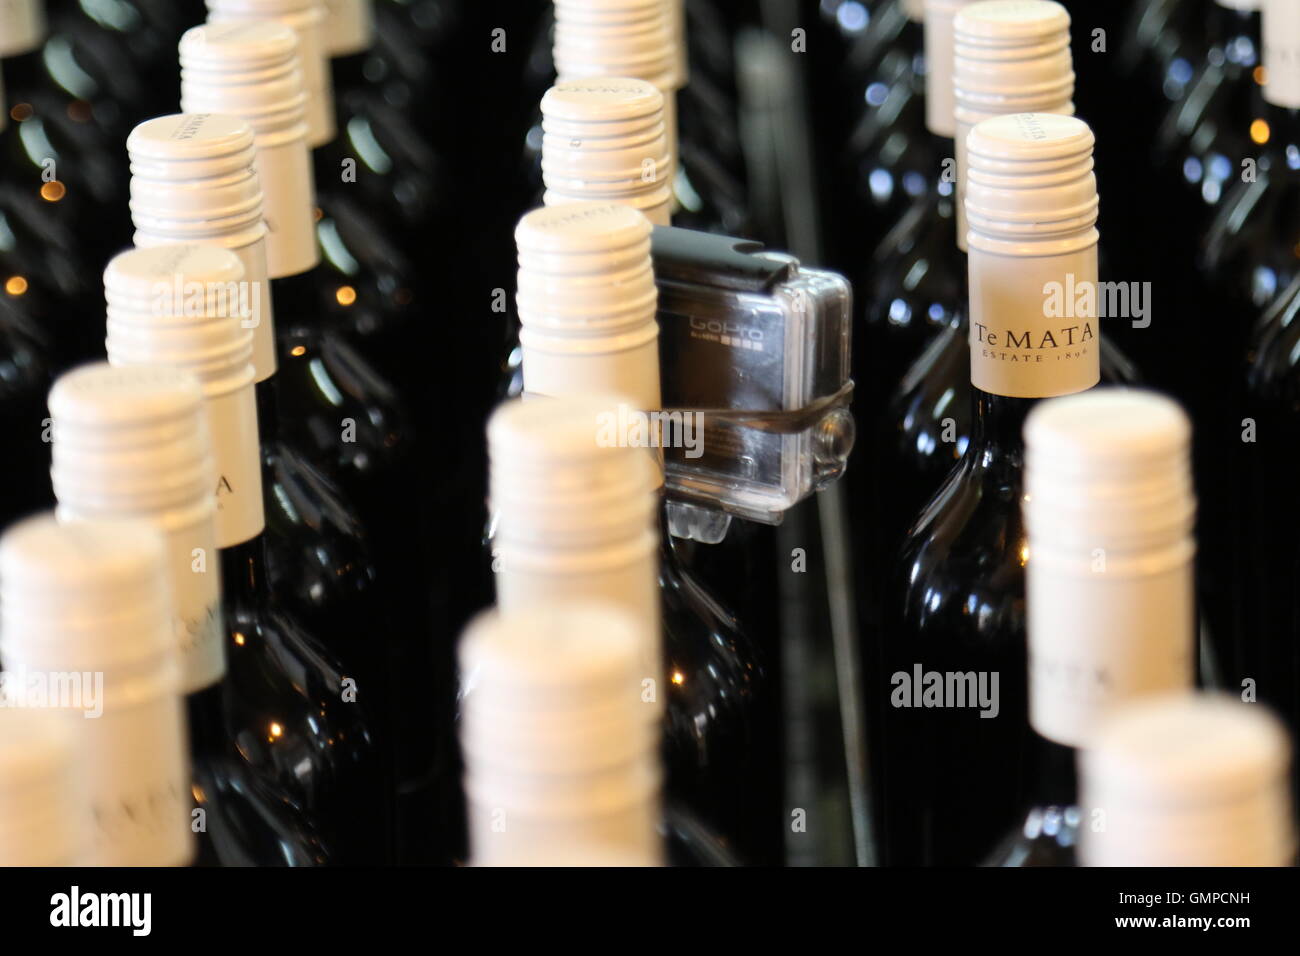 Go Pro telecamera attaccata alla bottiglia di vino in una fila di bottiglie a Te Mata cantina immobiliare, Havelock North, Nuova Zelanda Foto Stock